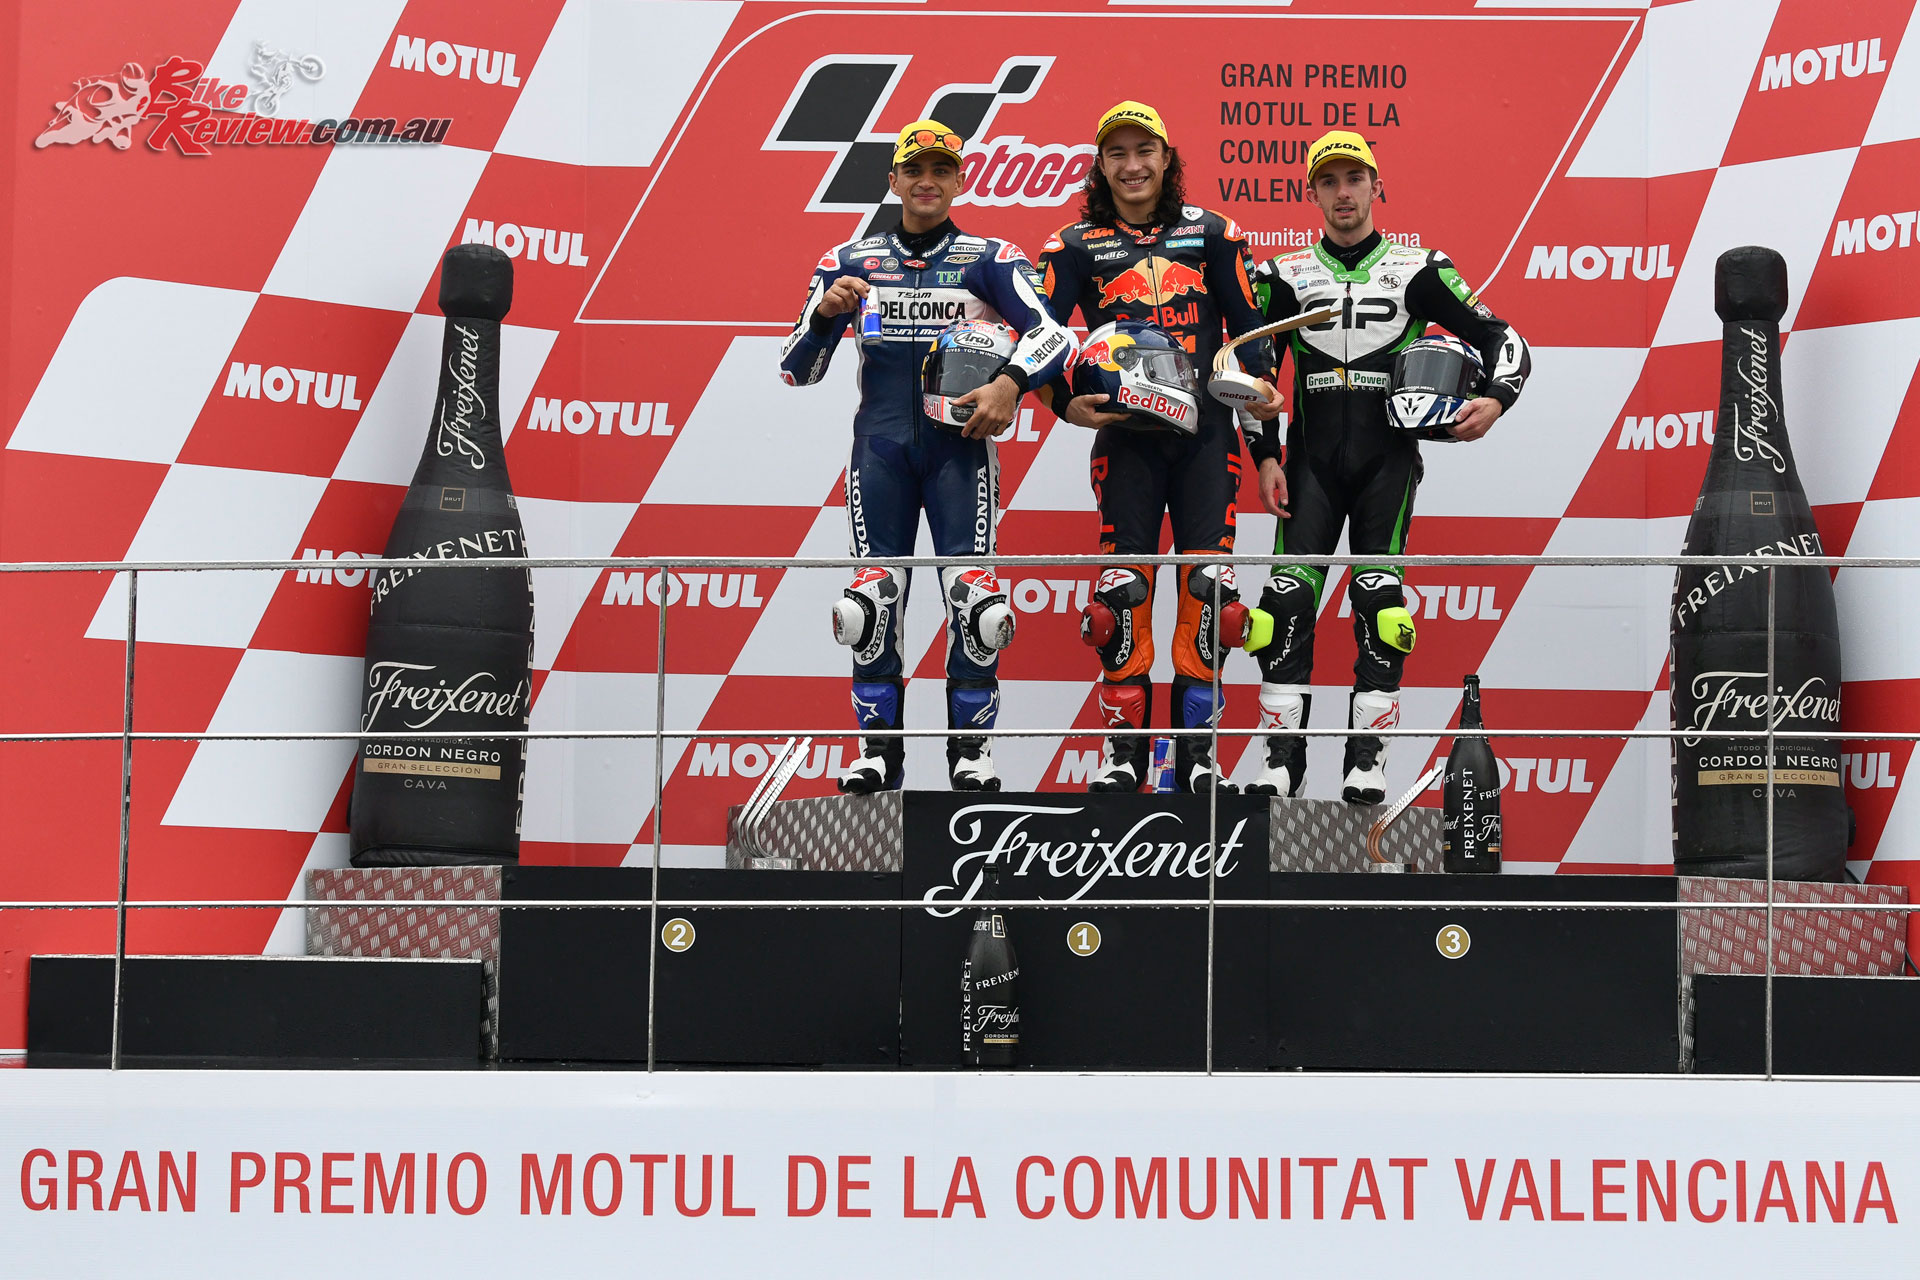 Moto3 Podium - 2018 MotoGP Valencia